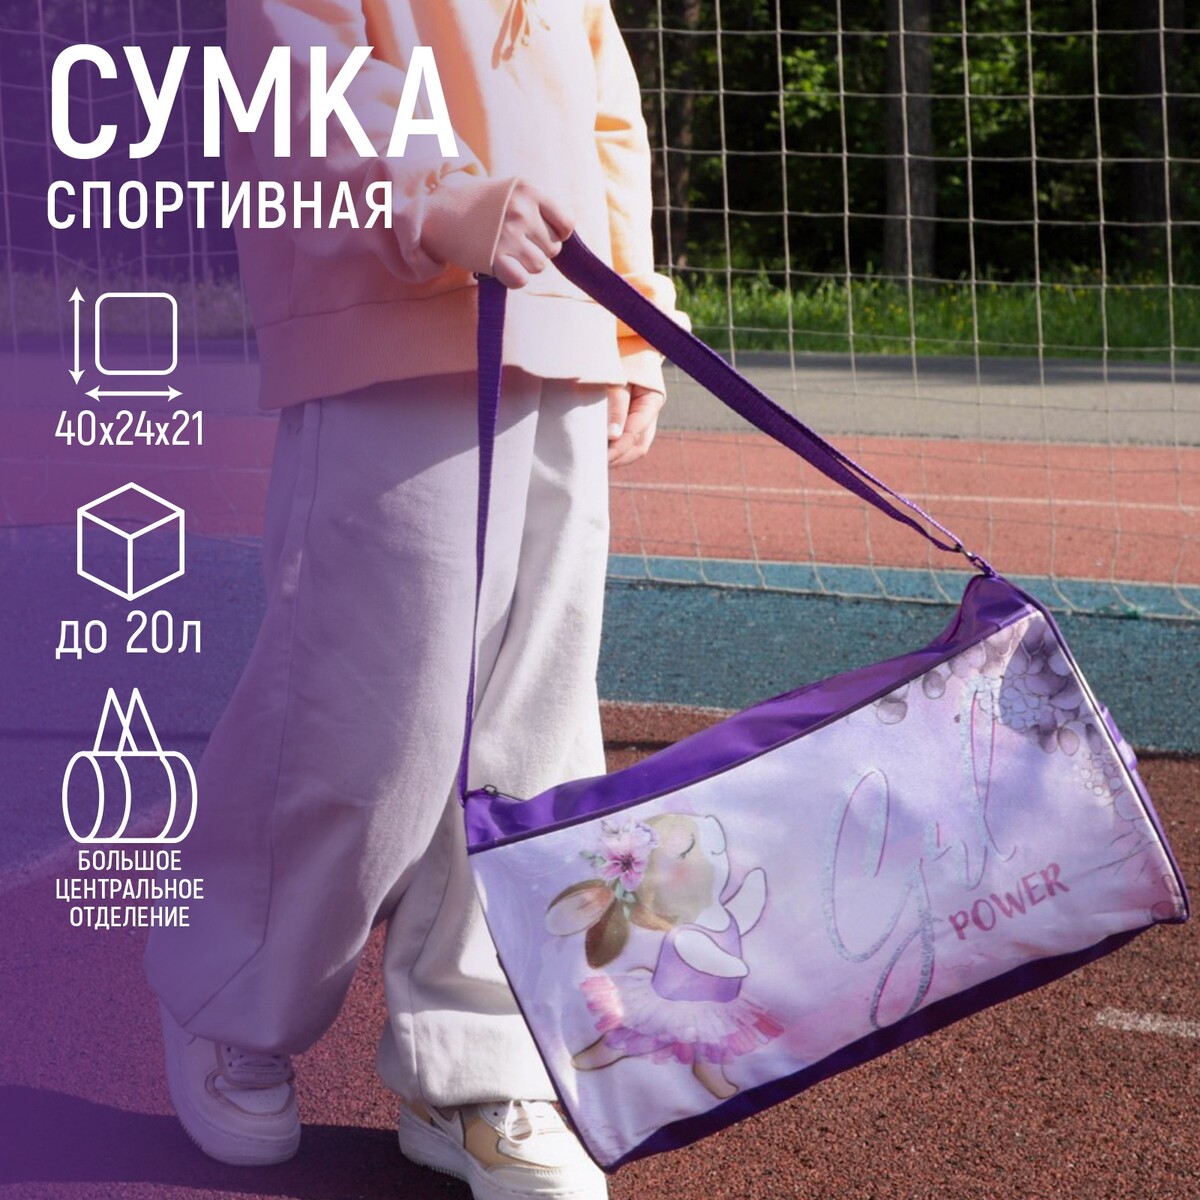 Сумка спортивная на молнии, наружный карман, цвет сиреневый сумка спортивная russian team наружный карман 40 см х 24 см х 21 см